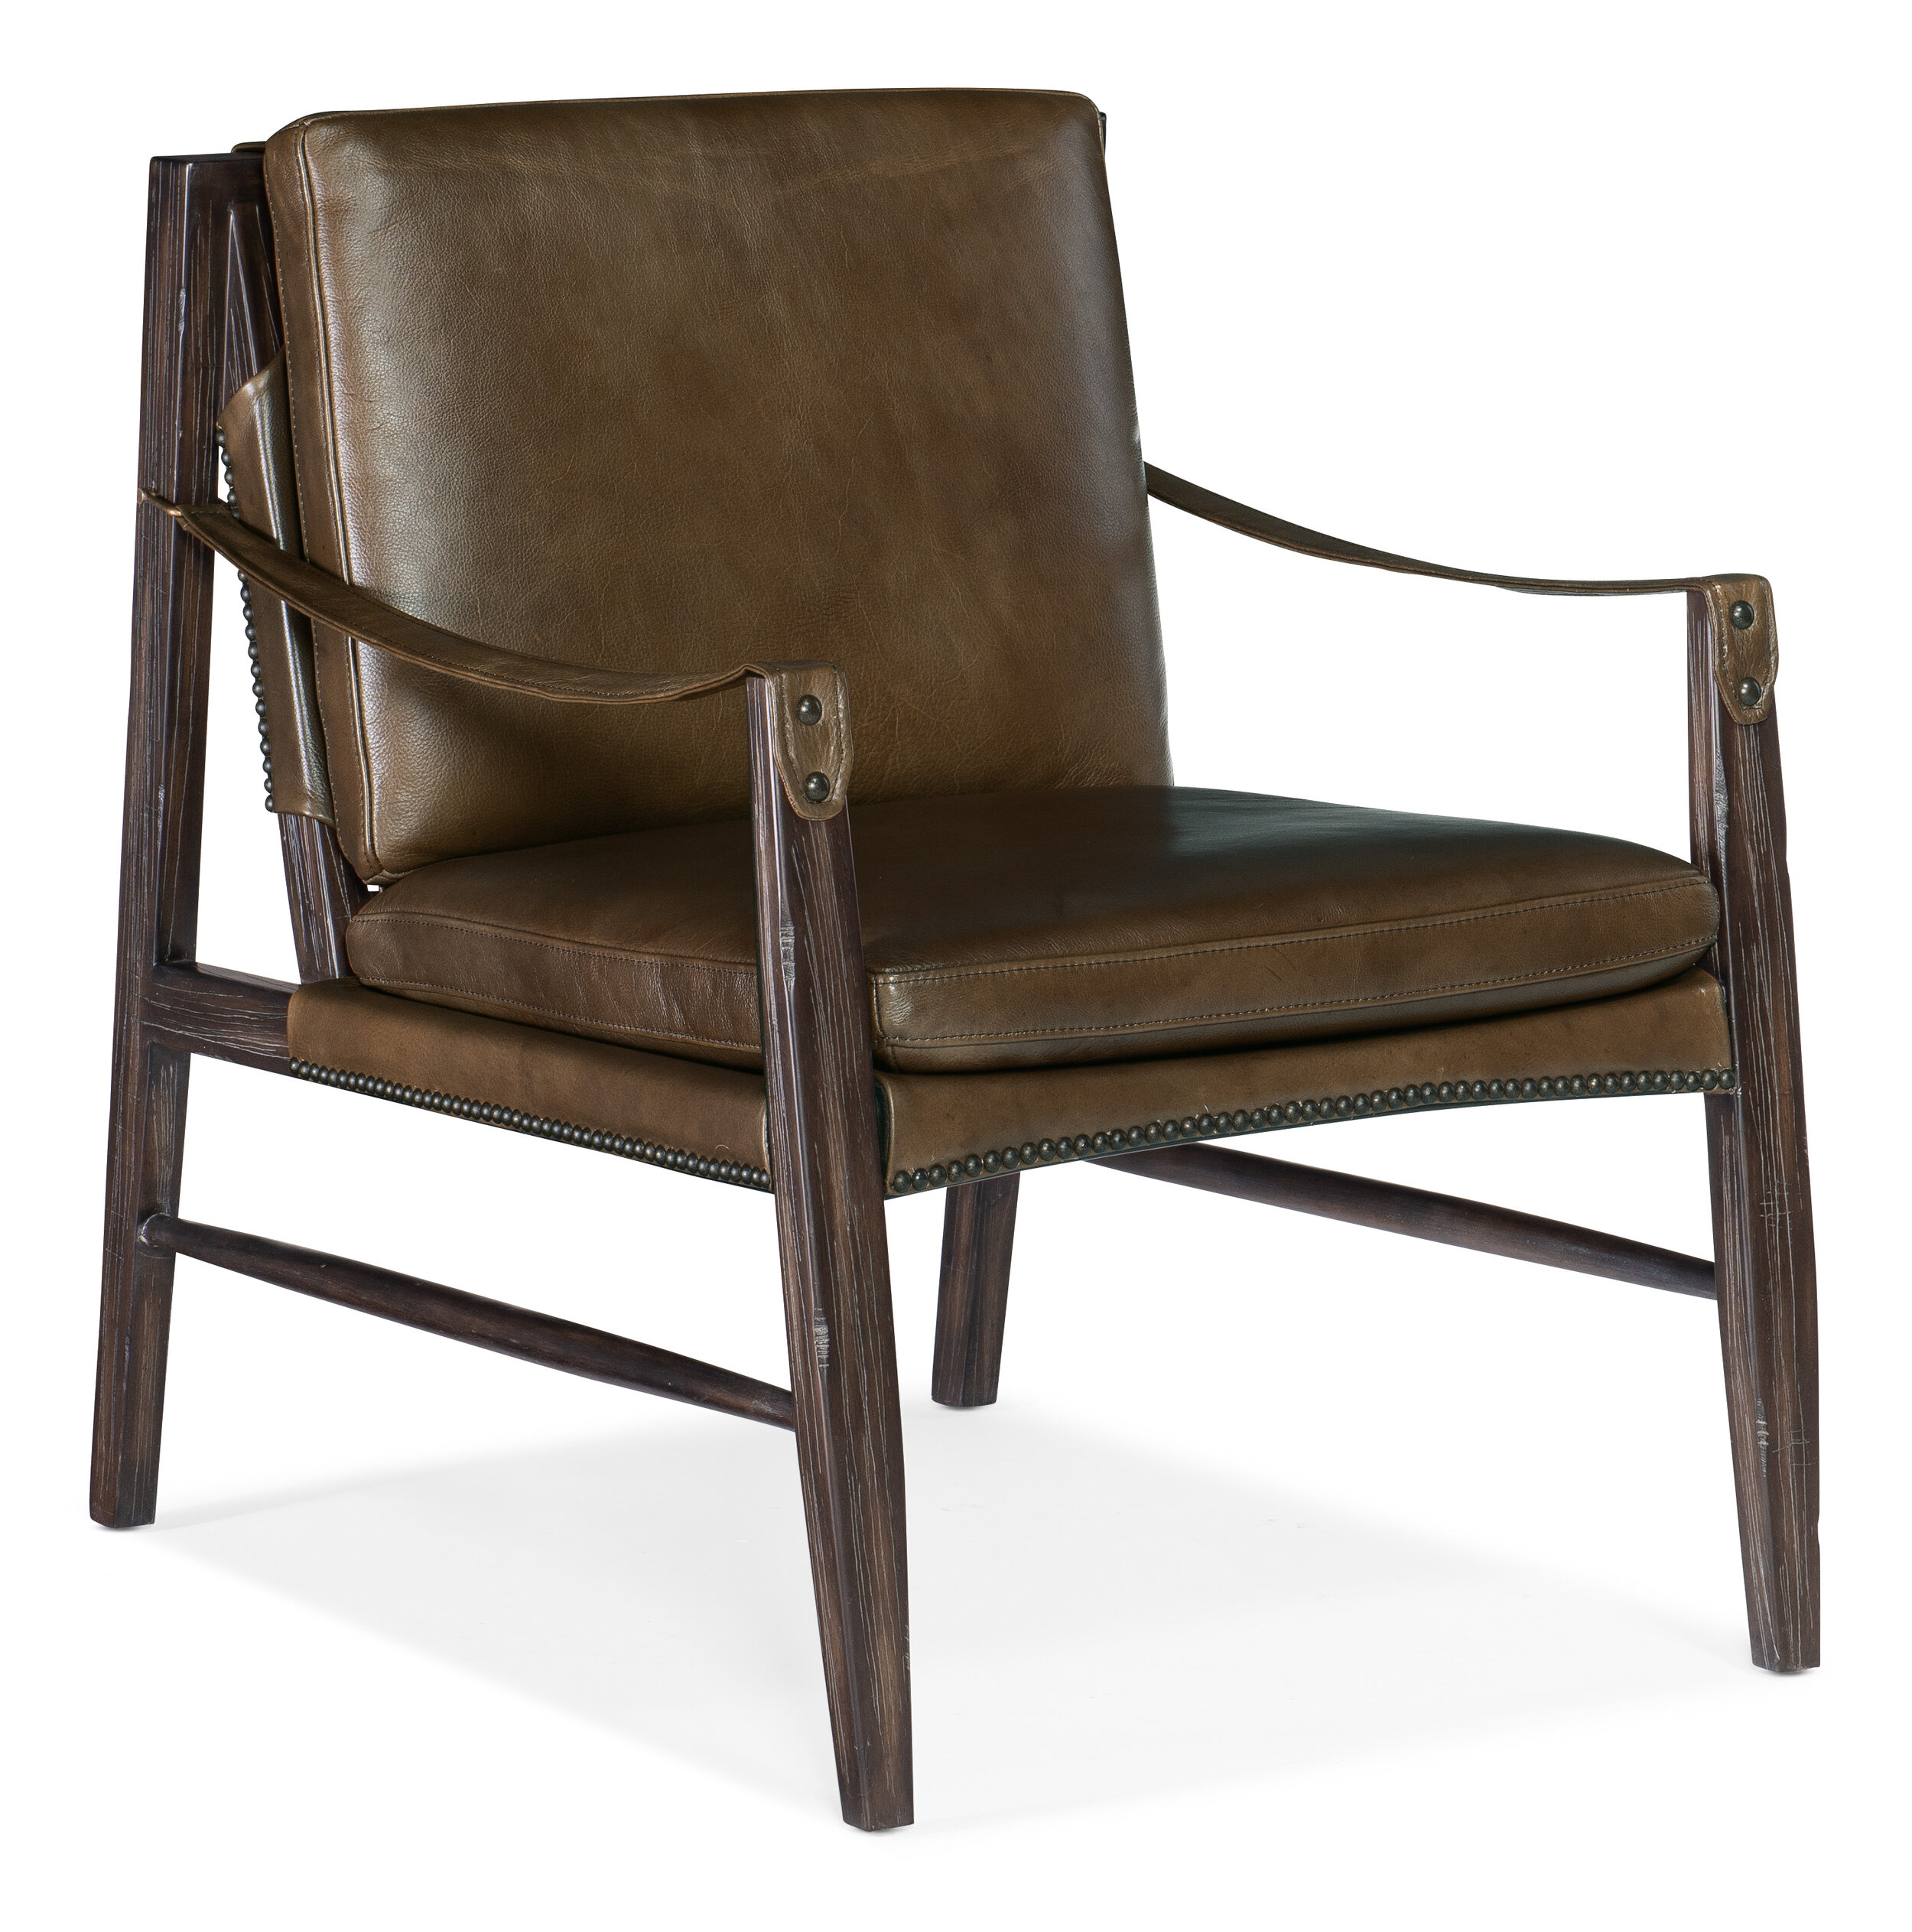 Hooker Furniture’s Sabi Sands Sling Chair